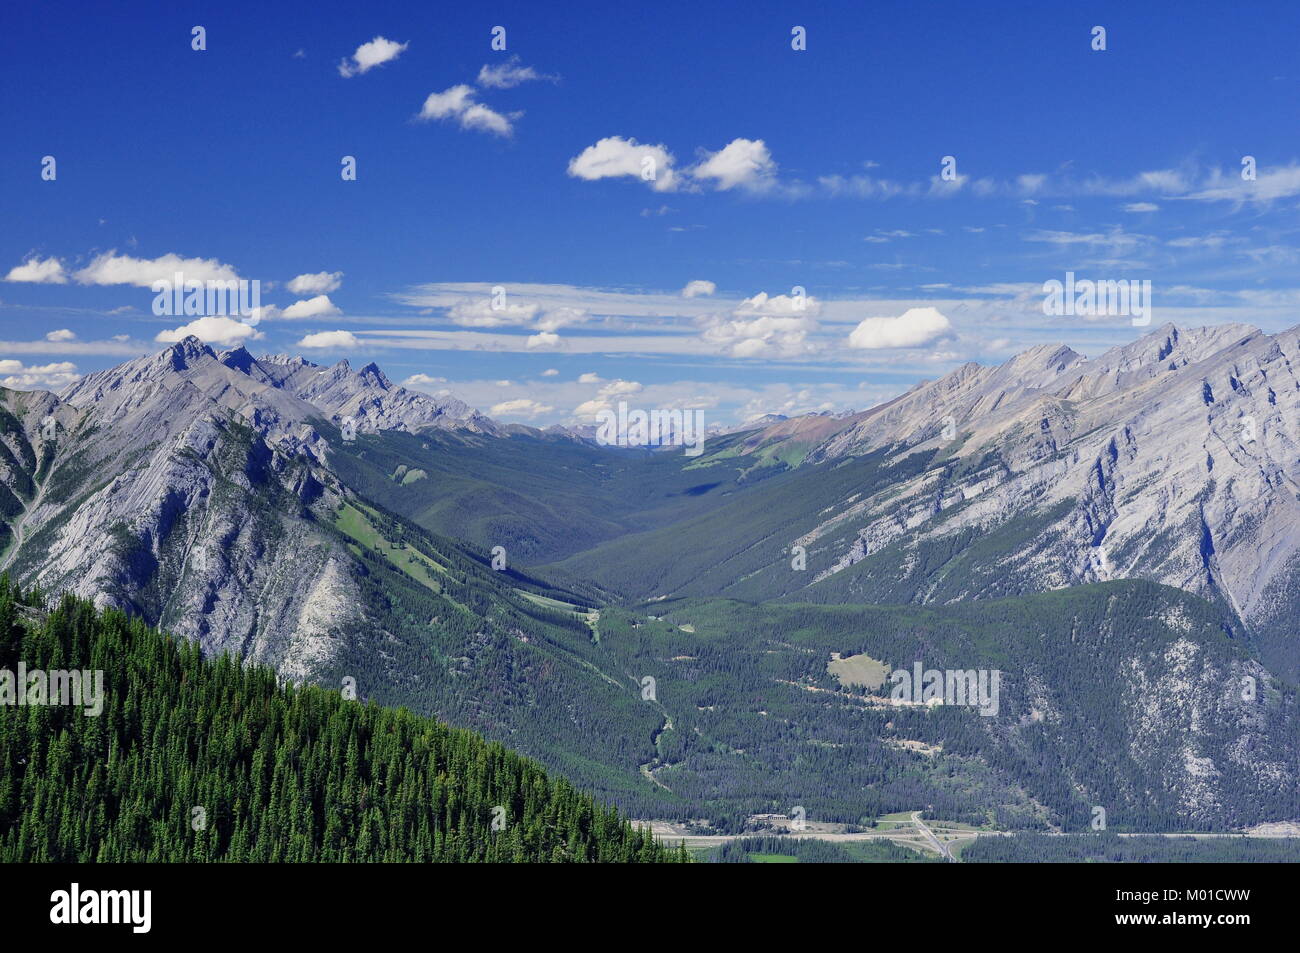 Ein langes, rollendes Tal im Banff National Park in Alberta, Kanada, umgeben von den beeindruckenden Rocky Mountains. Stockfoto